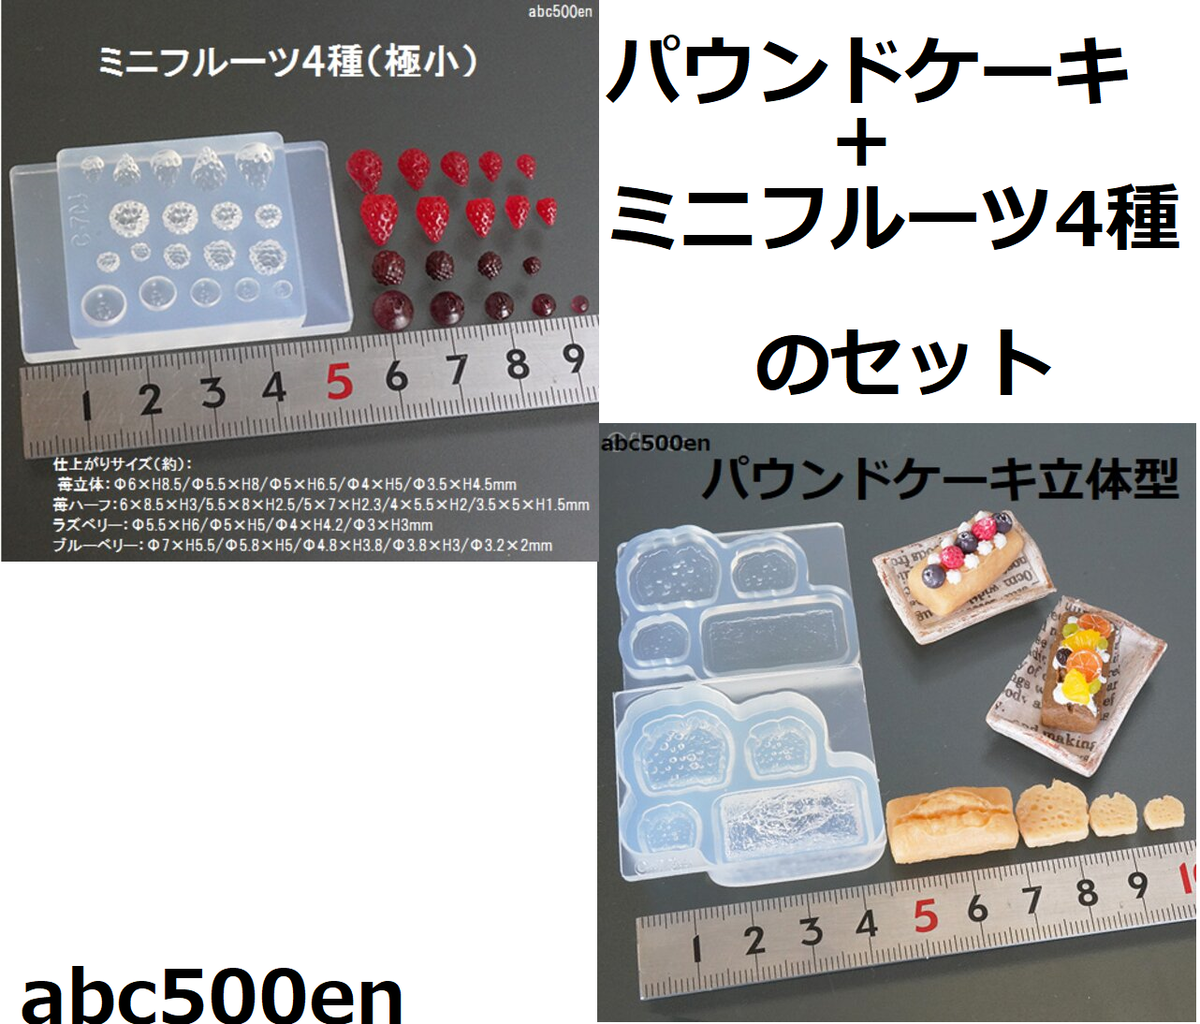 パウンドケーキとミニフルーツ4種のセット Abc500en